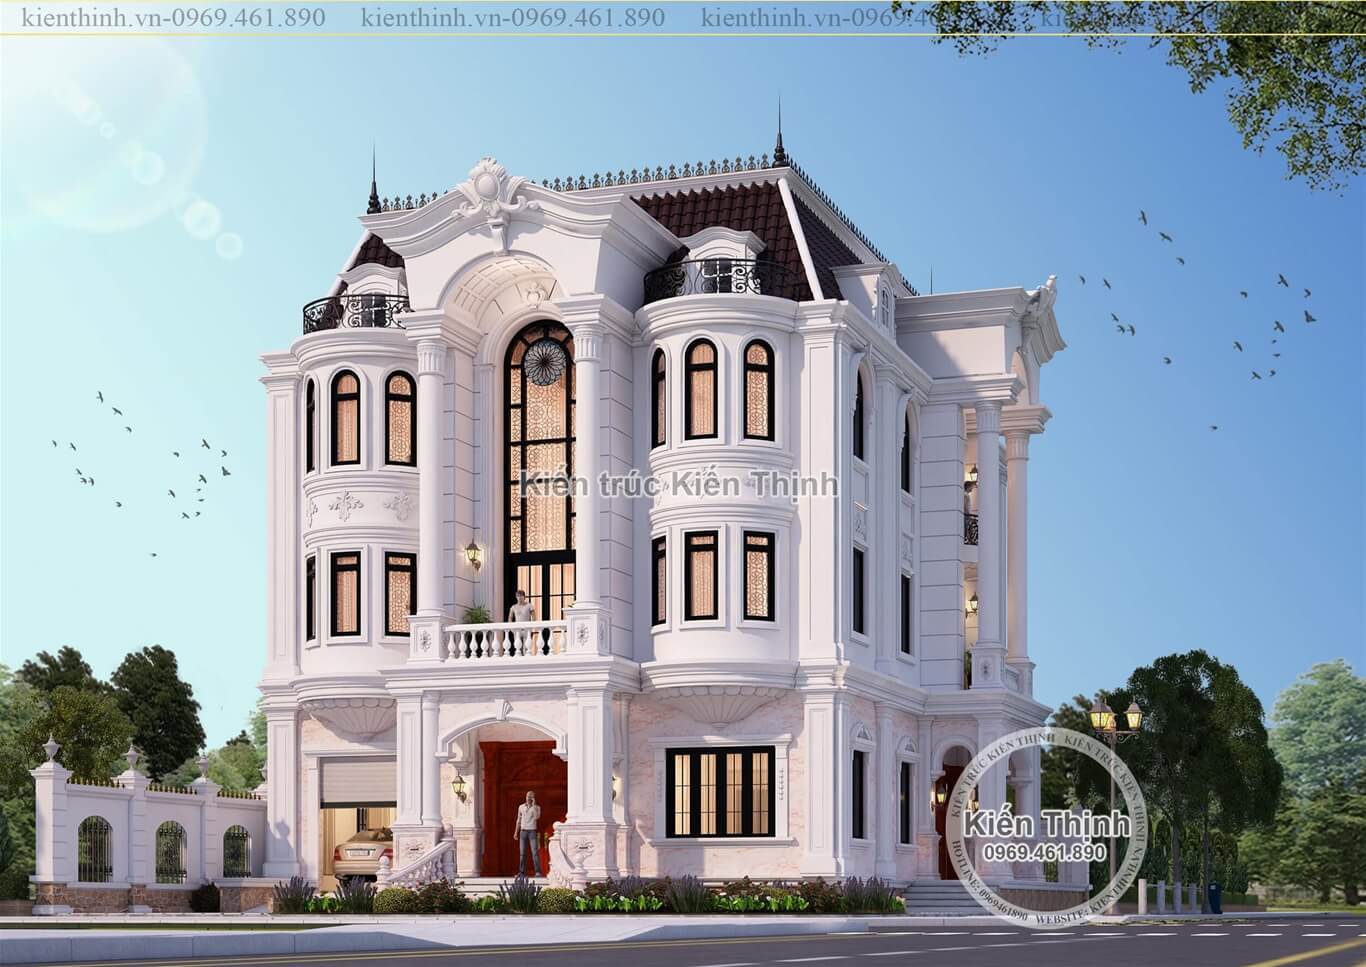  Mẫu thiết kế nội thất biệt thự 3 tầng đẹp tân cổ điển kiểu Pháp tại thành phố Đà Nẵng